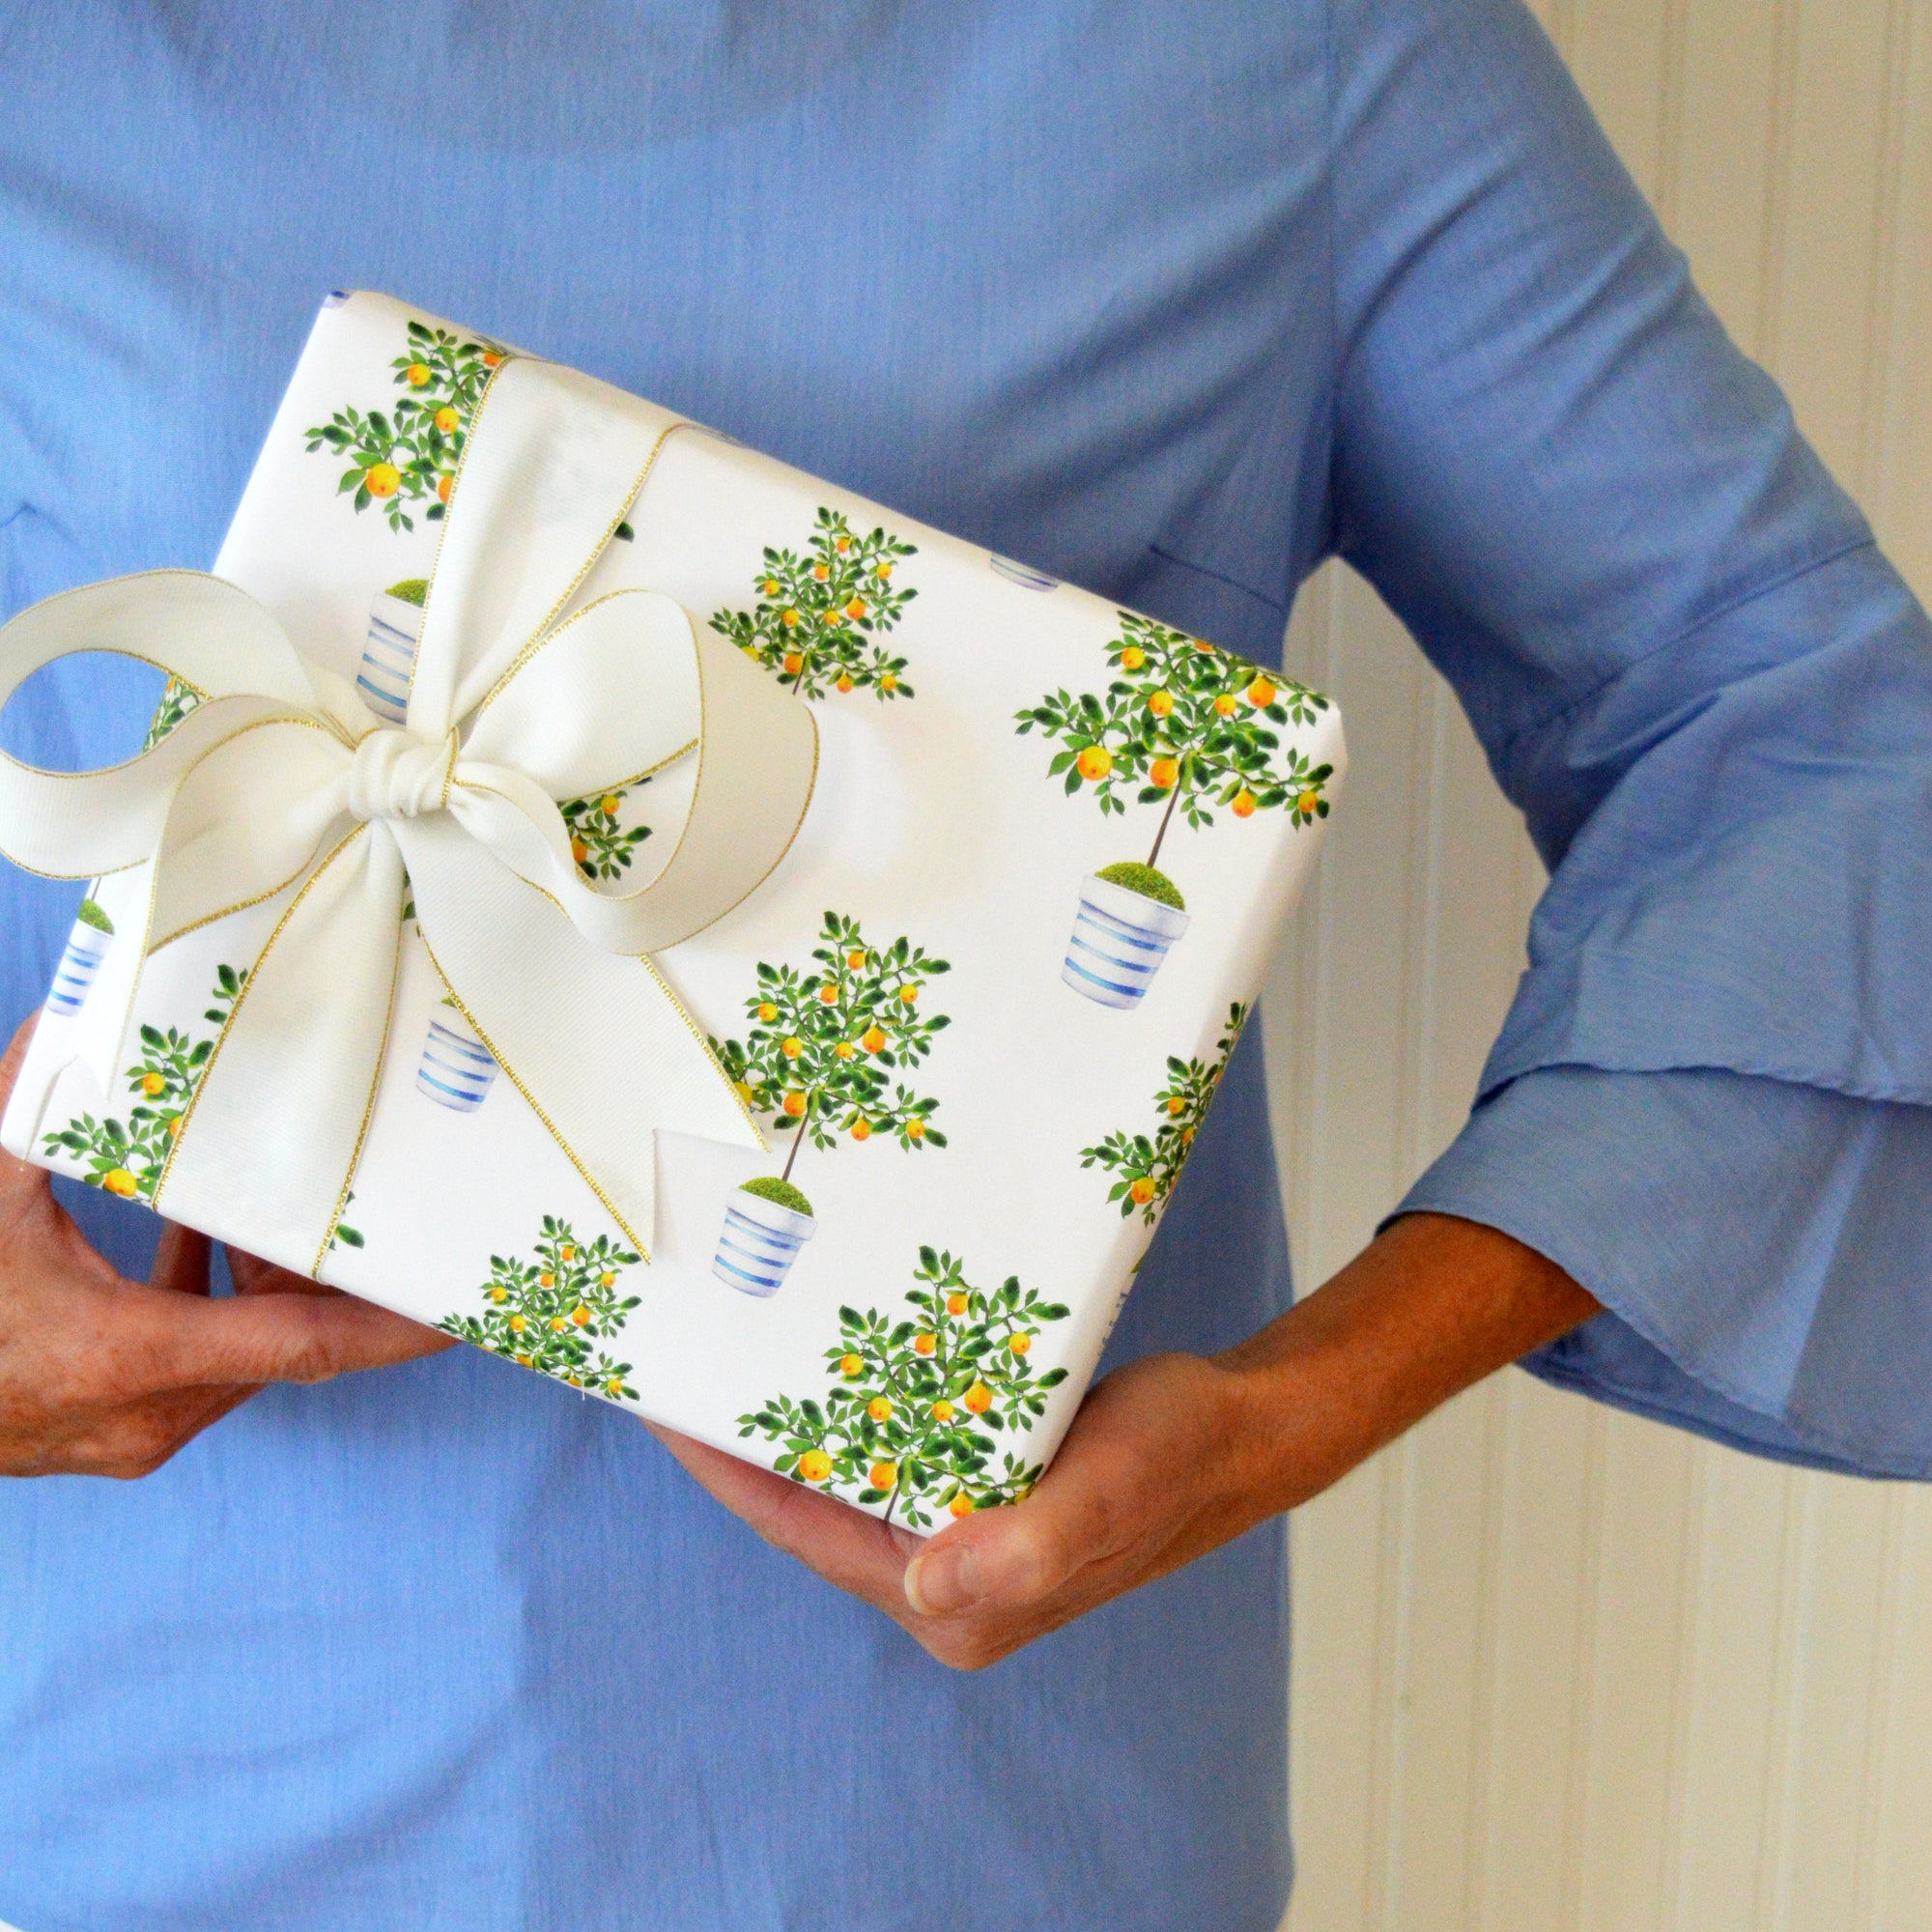 Lemon Tree Gift Wrap Sheets